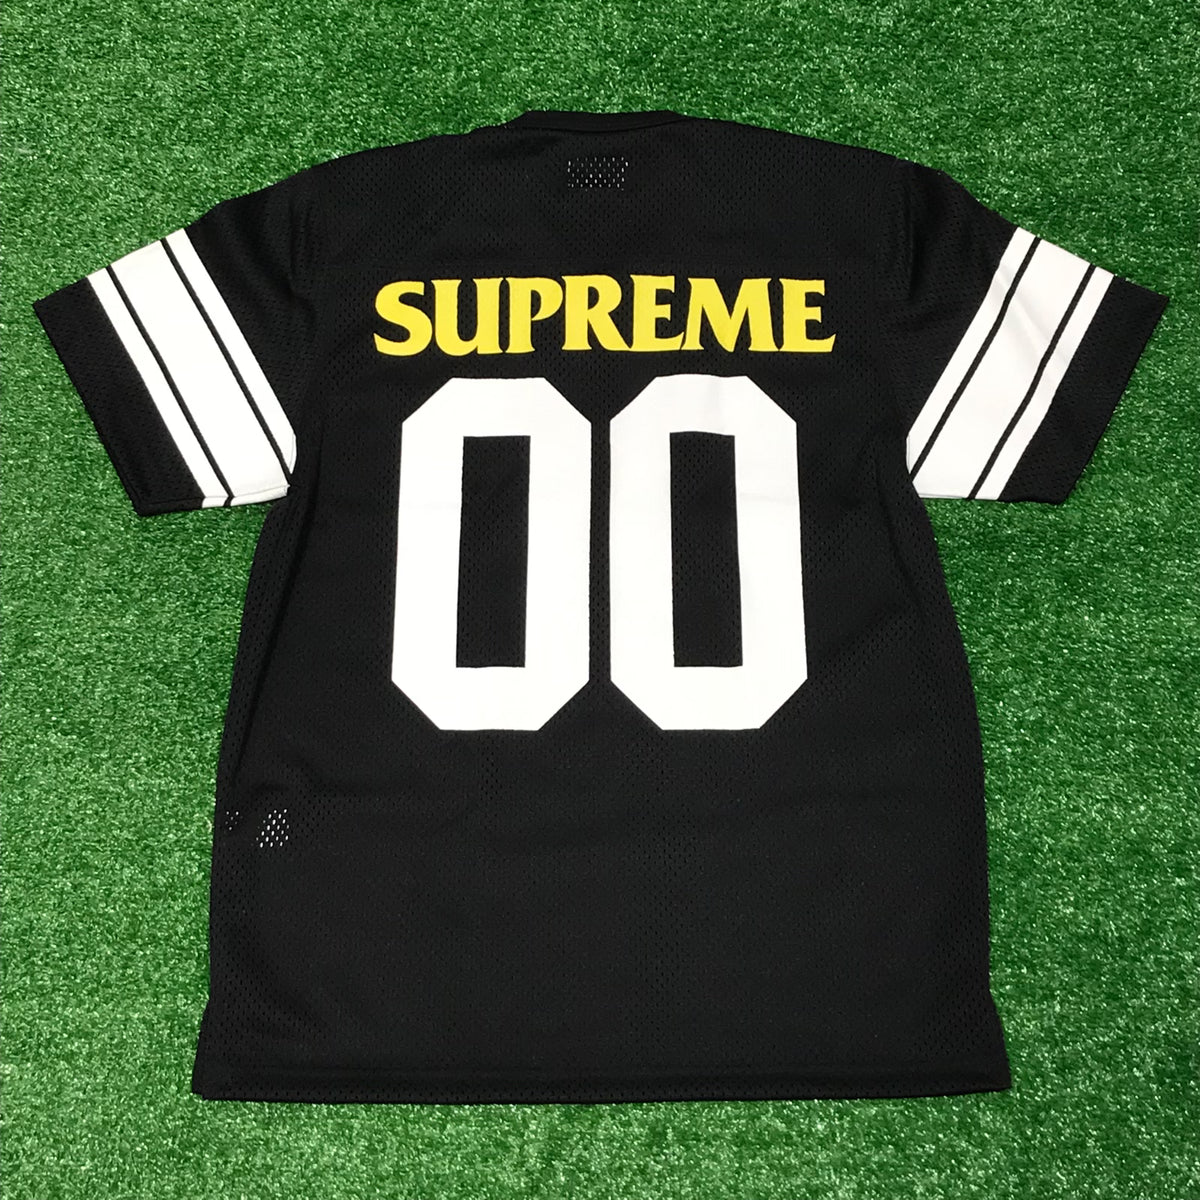 Supreme x Anti Hero 00 Football Jersey – CommonGround12